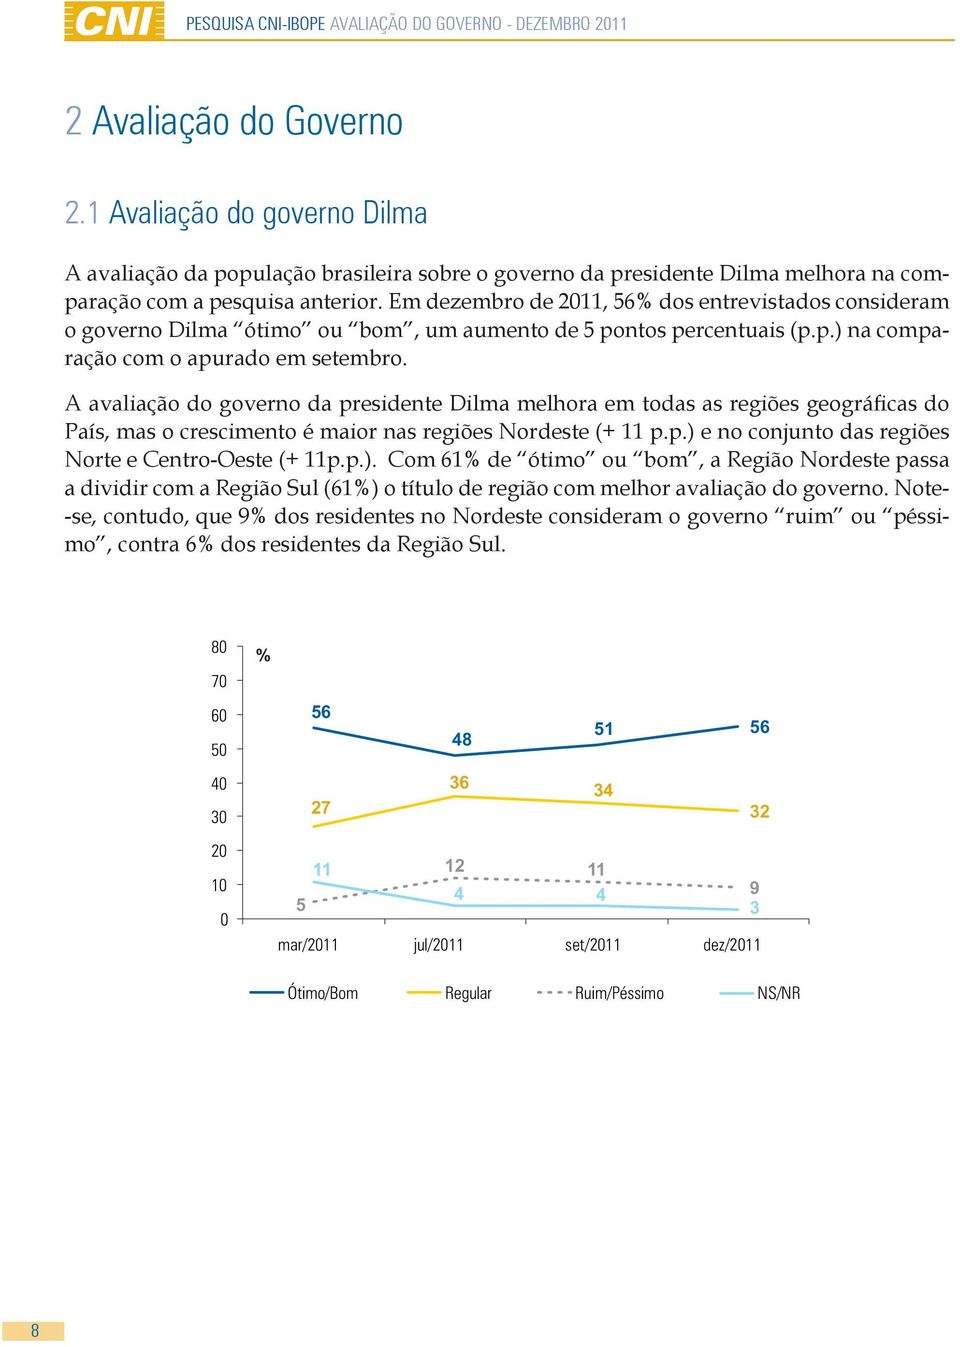 A avaliação do governo da presidente Dilma melhora em todas as regiões geográficas do País, mas o crescimento é maior nas regiões Nordeste (+ 11 p.p.) e no conjunto das regiões Norte e Centro-Oeste (+ 11p.